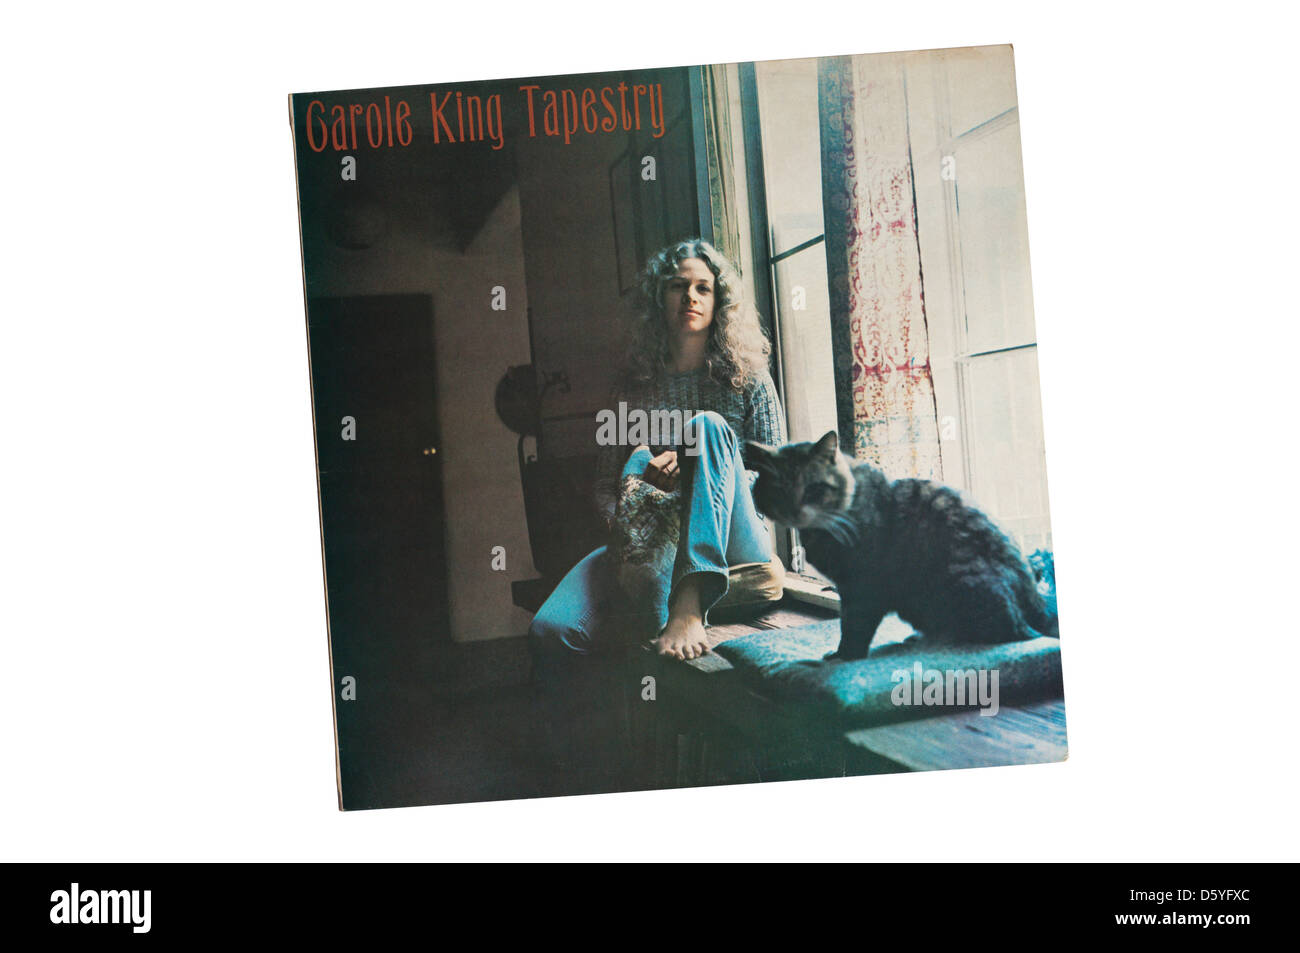 Arazzo era un 1971 album da cantautrice Carole King rilasciato su Ode record. Foto Stock